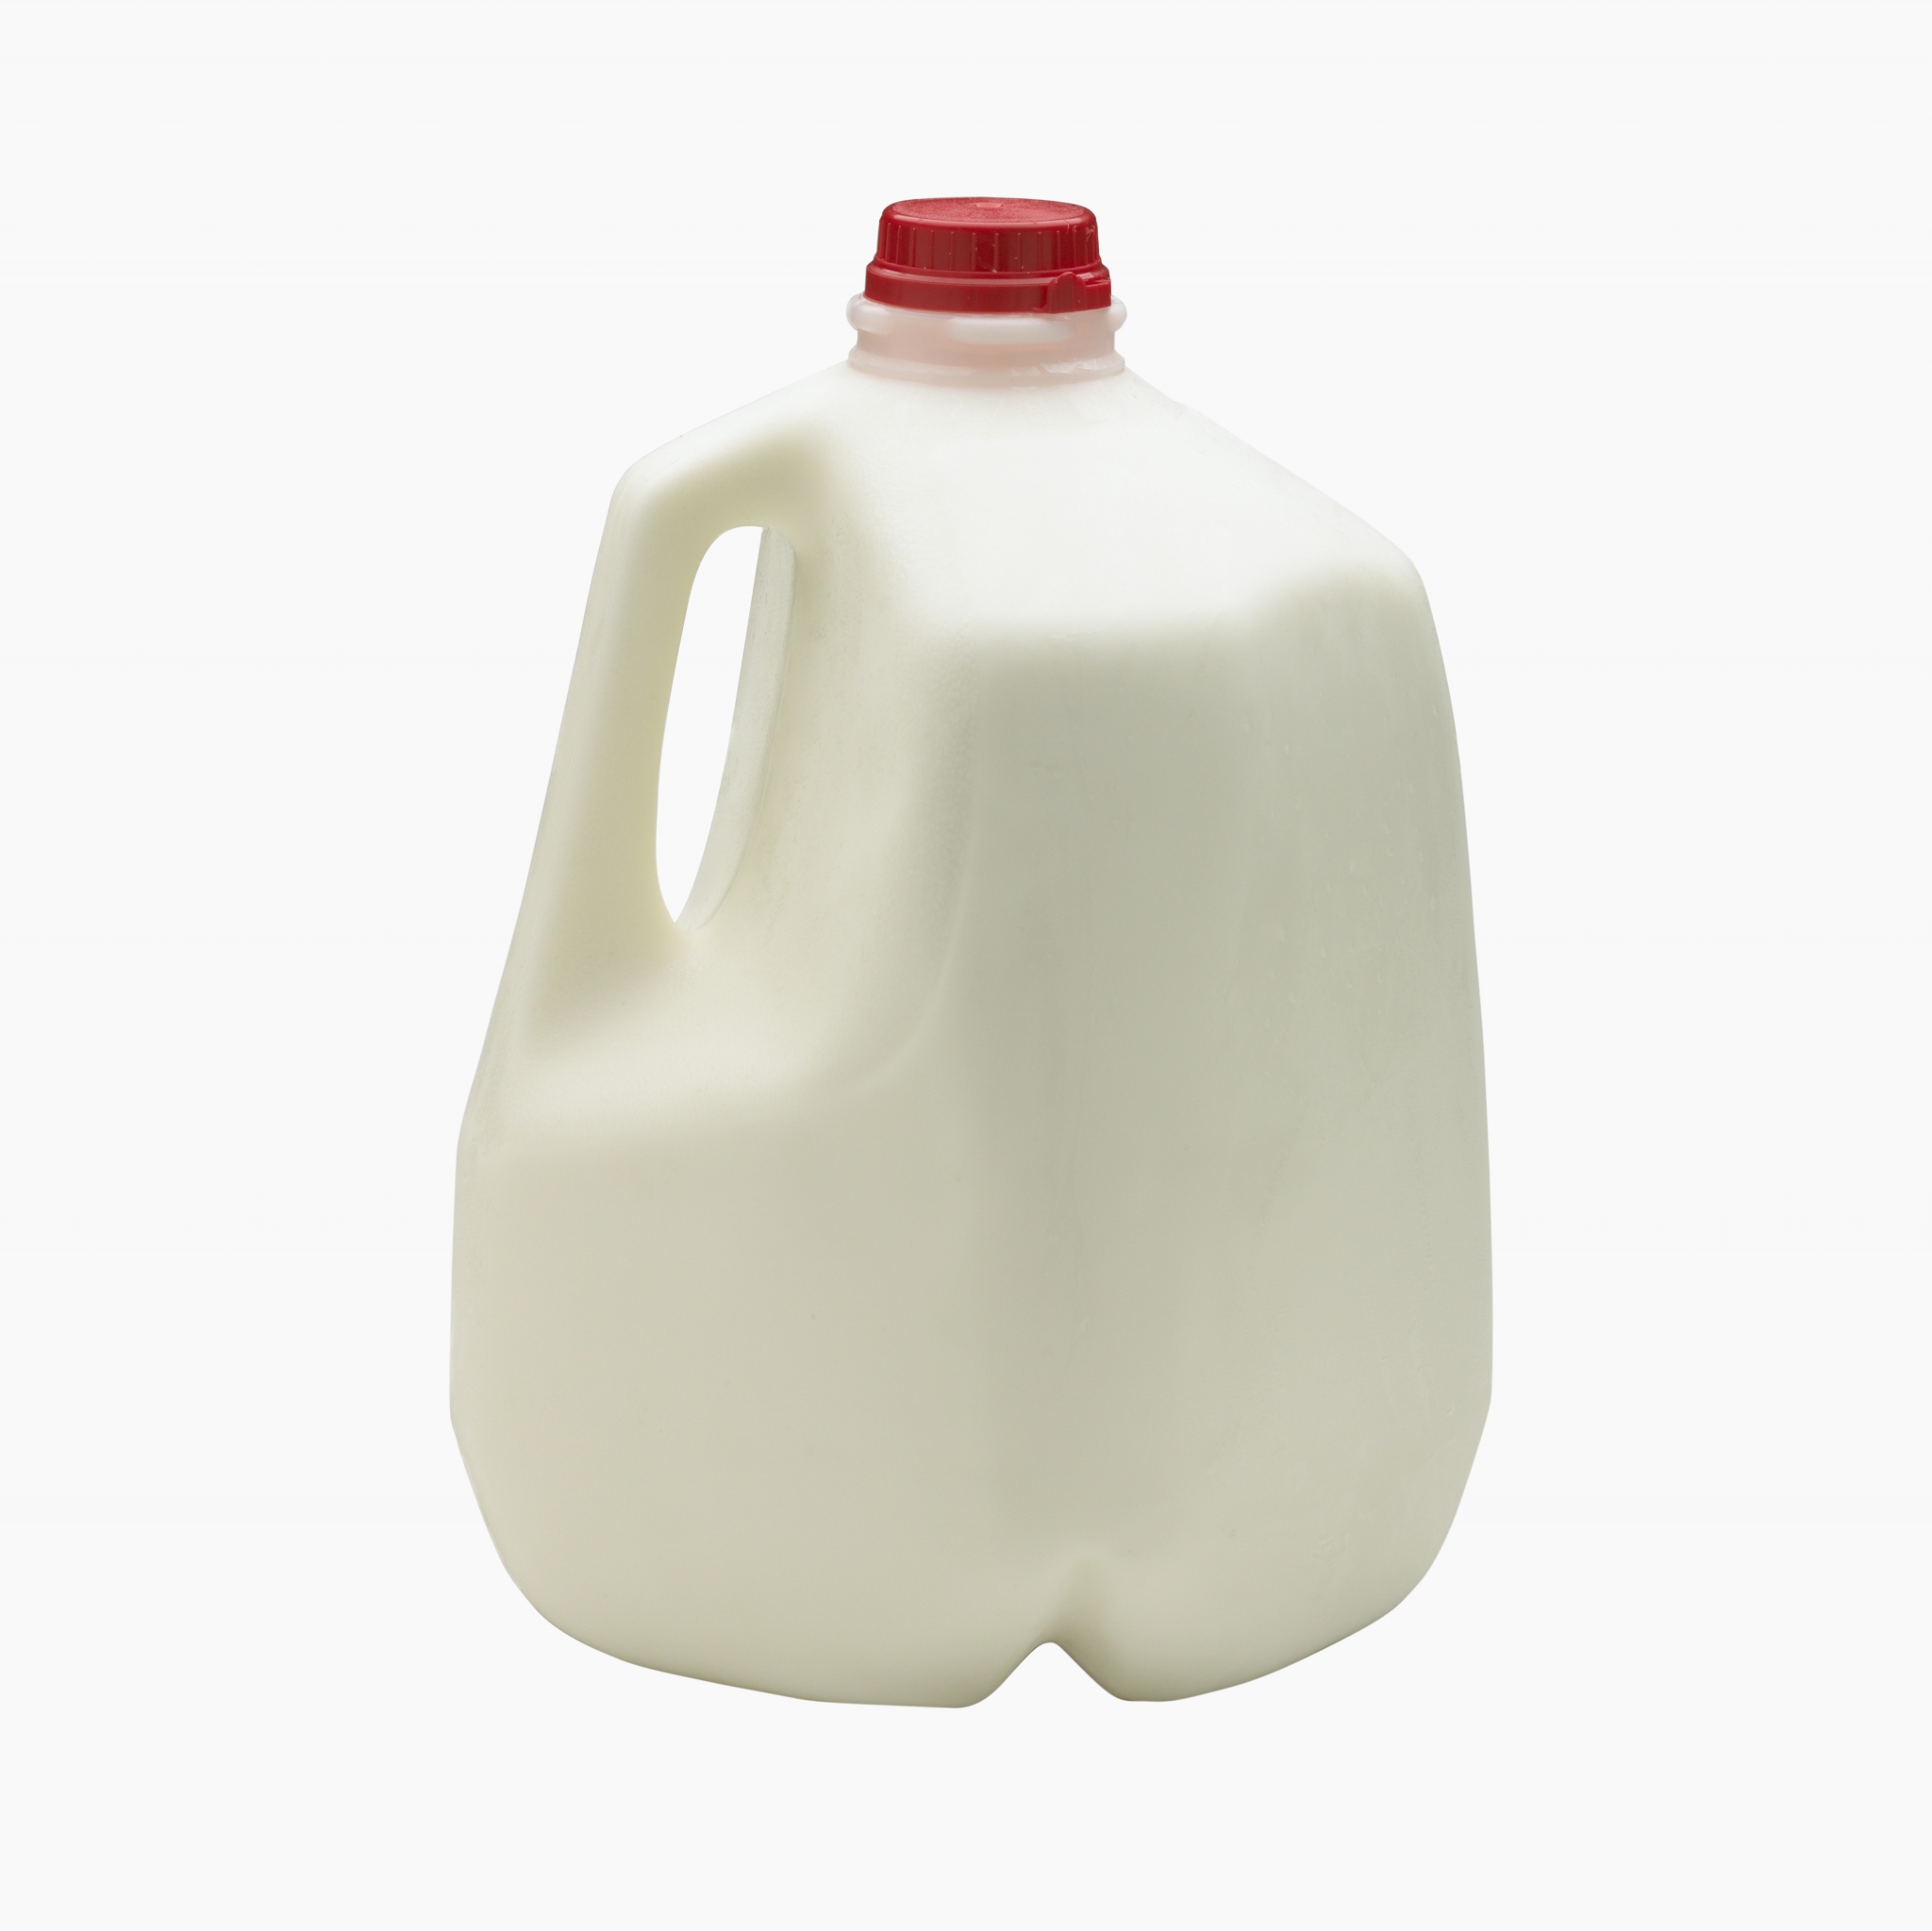 Whole milk, 1 gallon